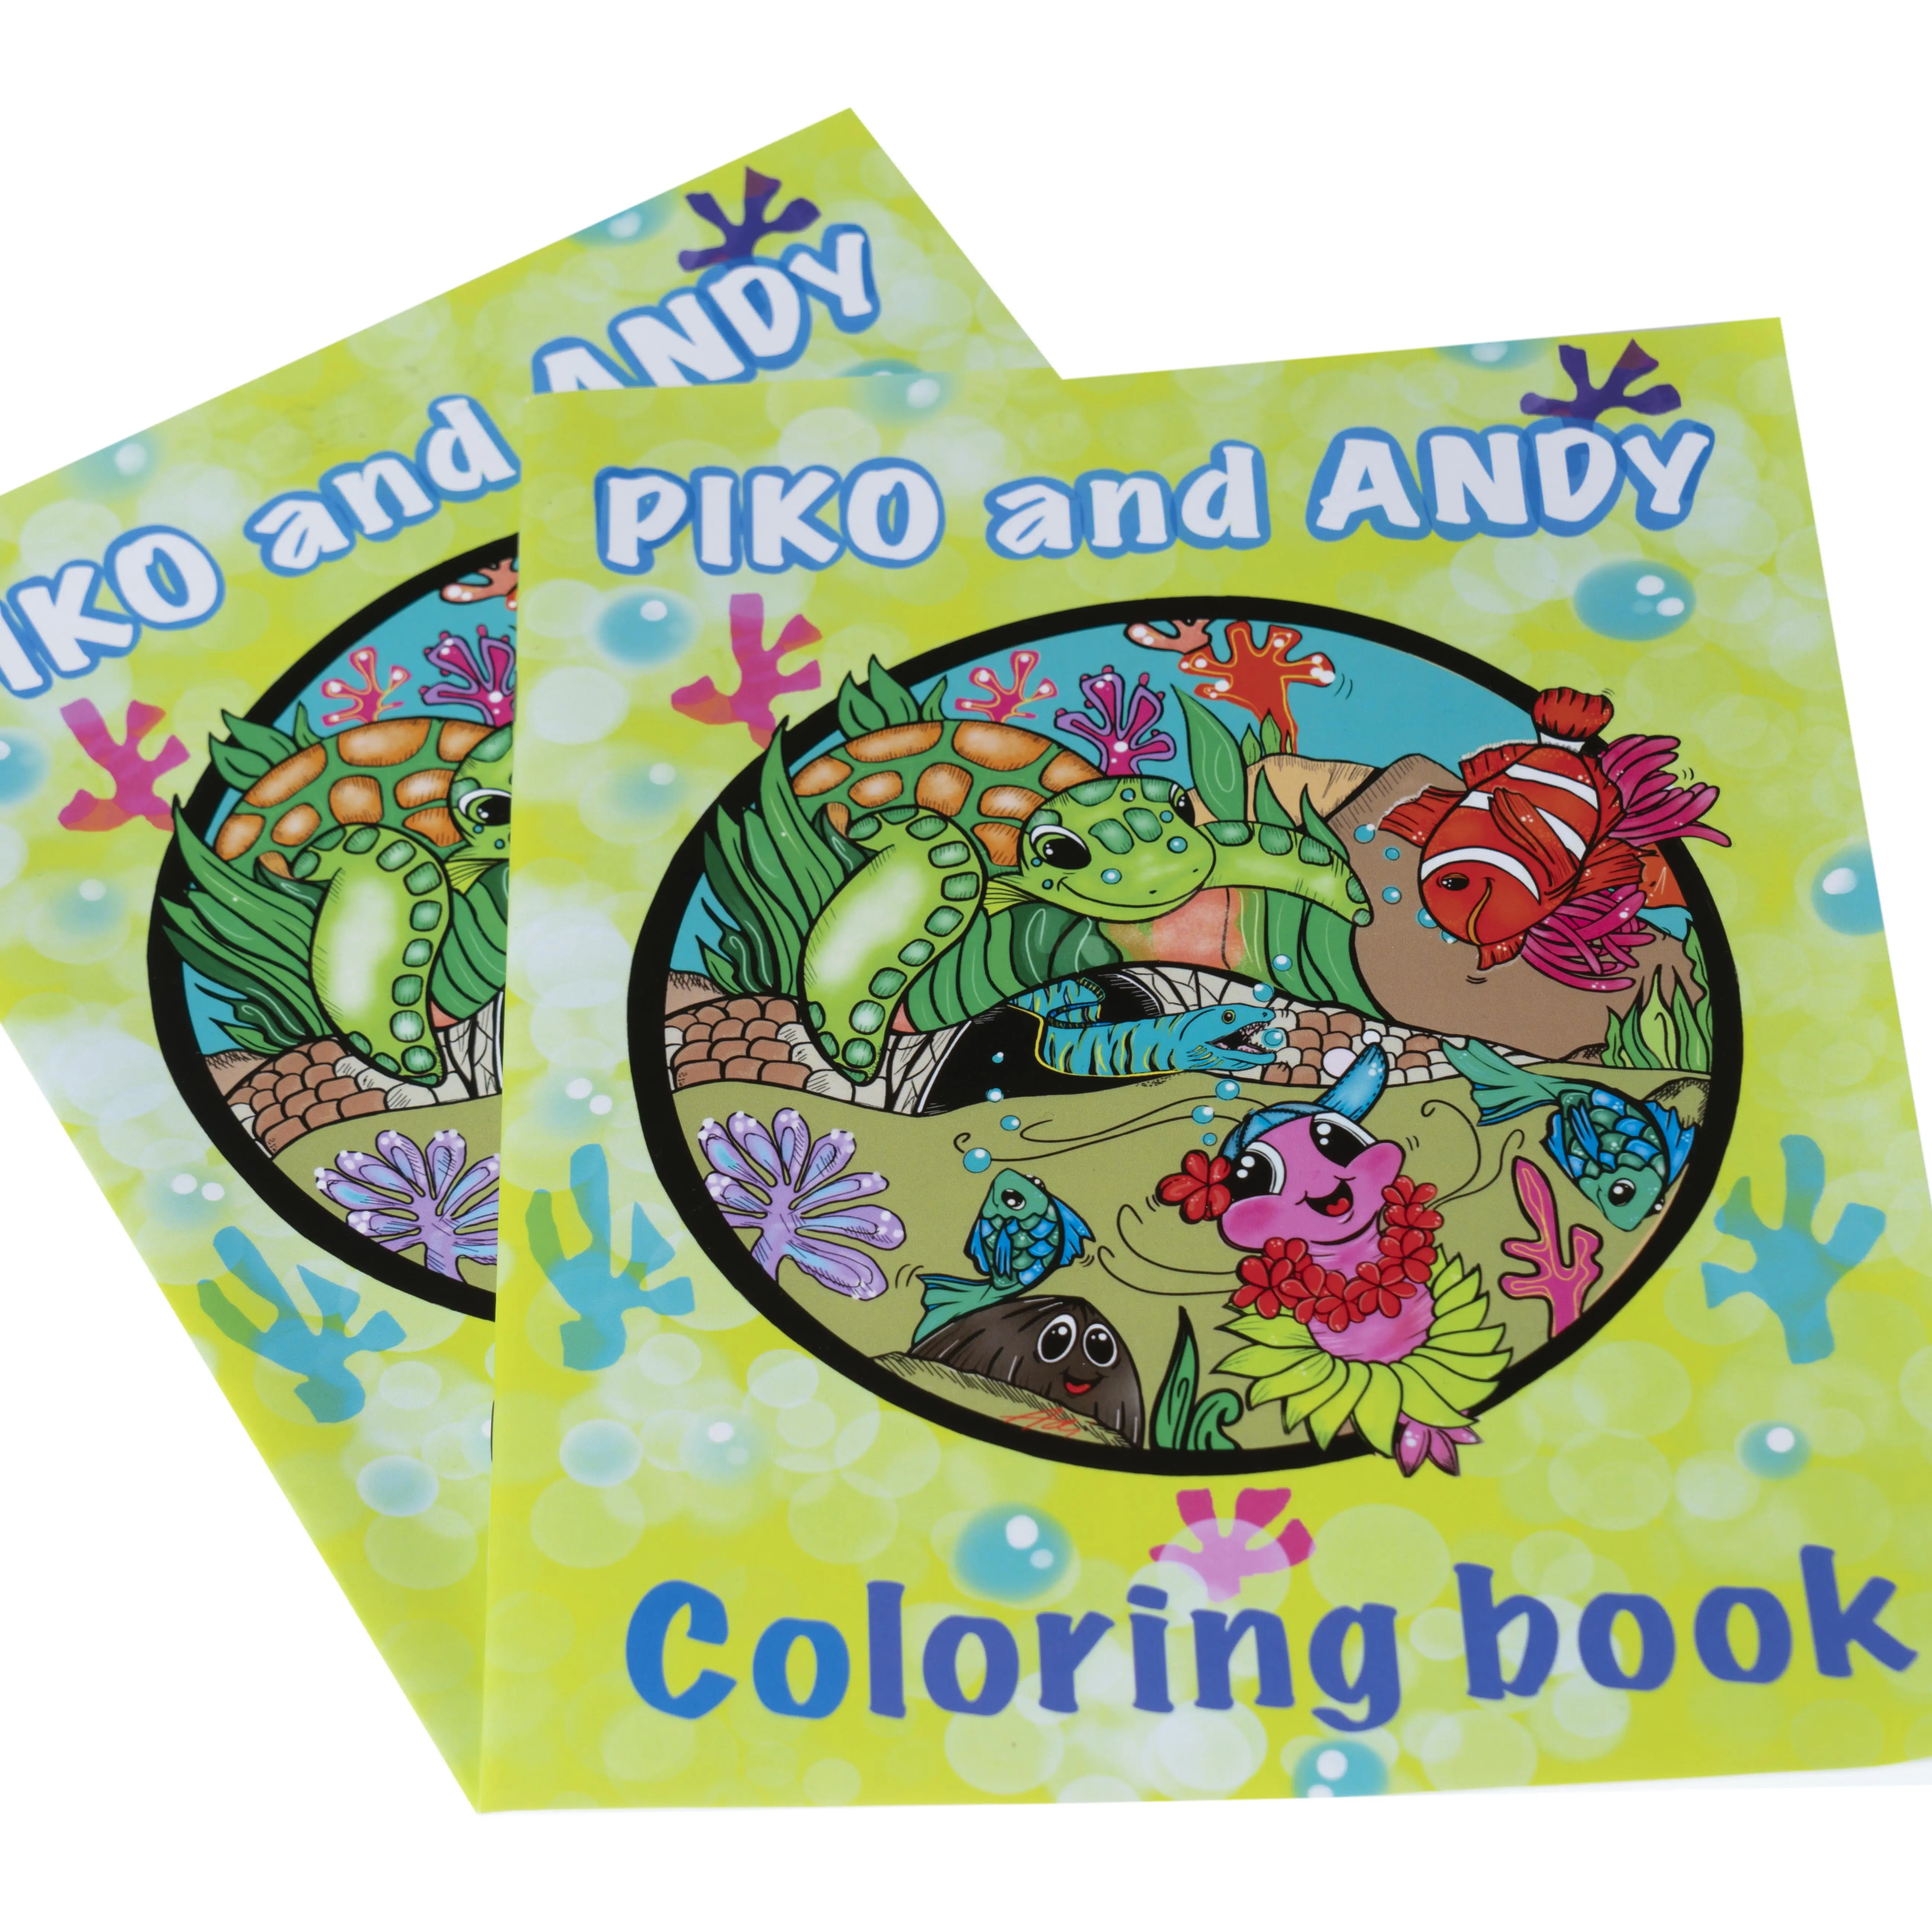 Servizio di stampa di libri da colorare per libri illustrati per bambini a colori In cina